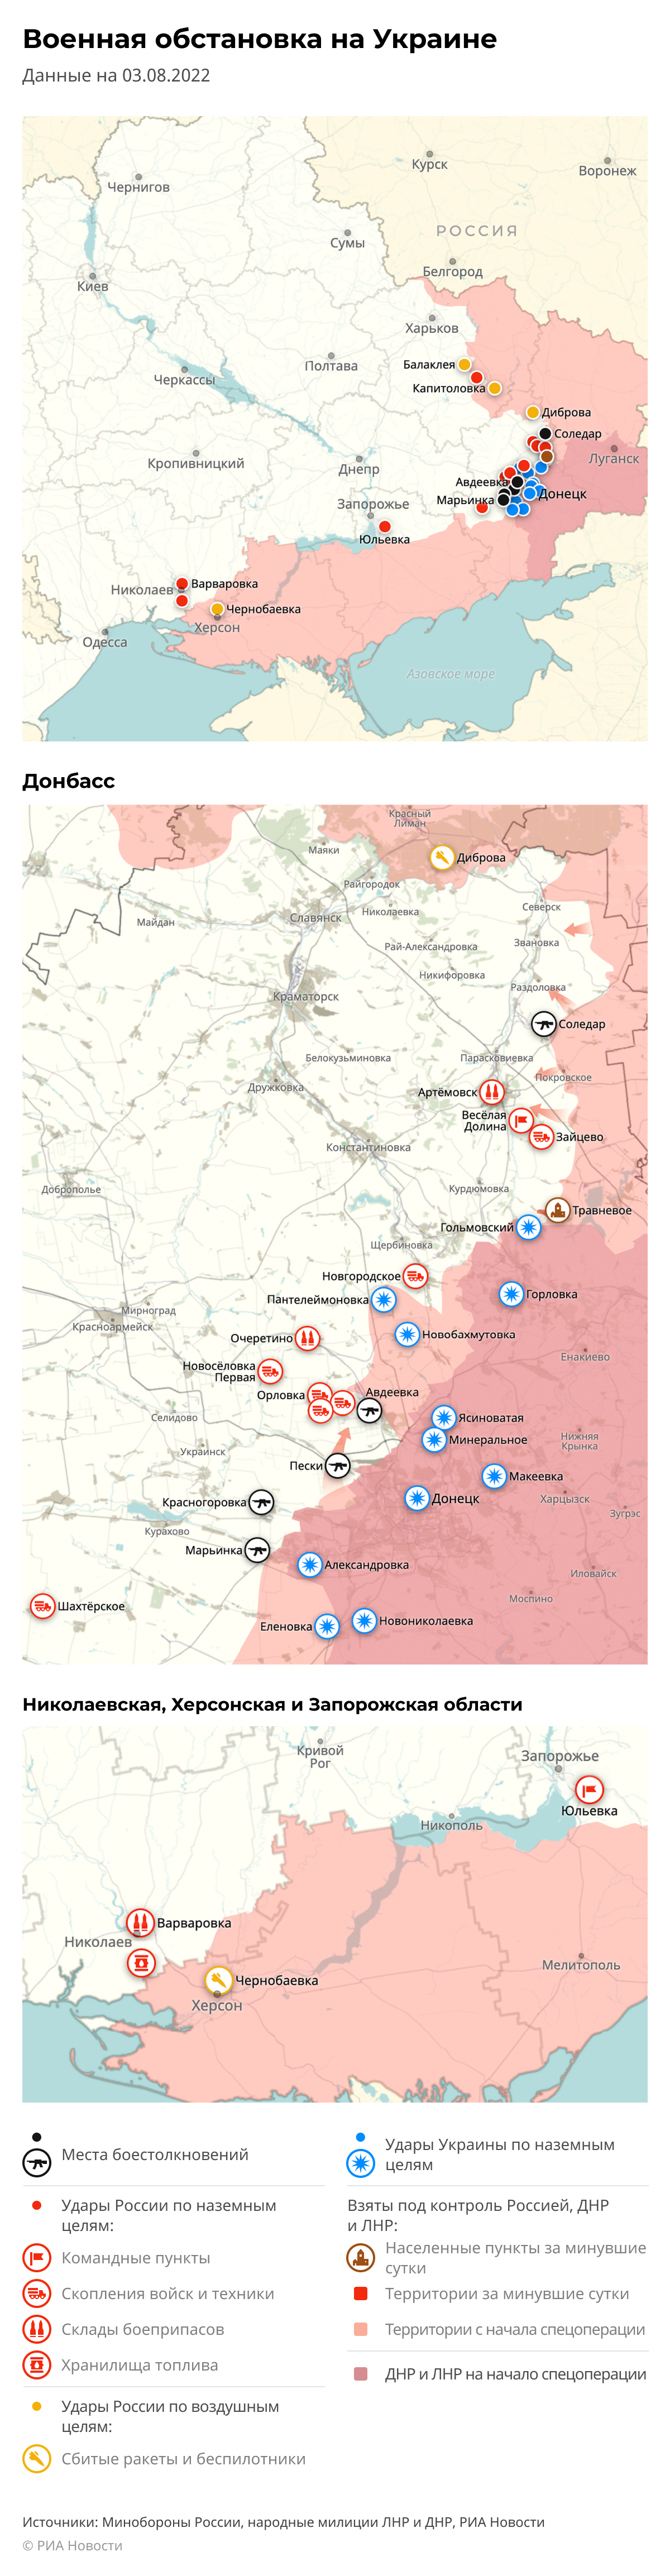 Карта спецоперации Вооруженных сил России на Украине на 03.08.2022